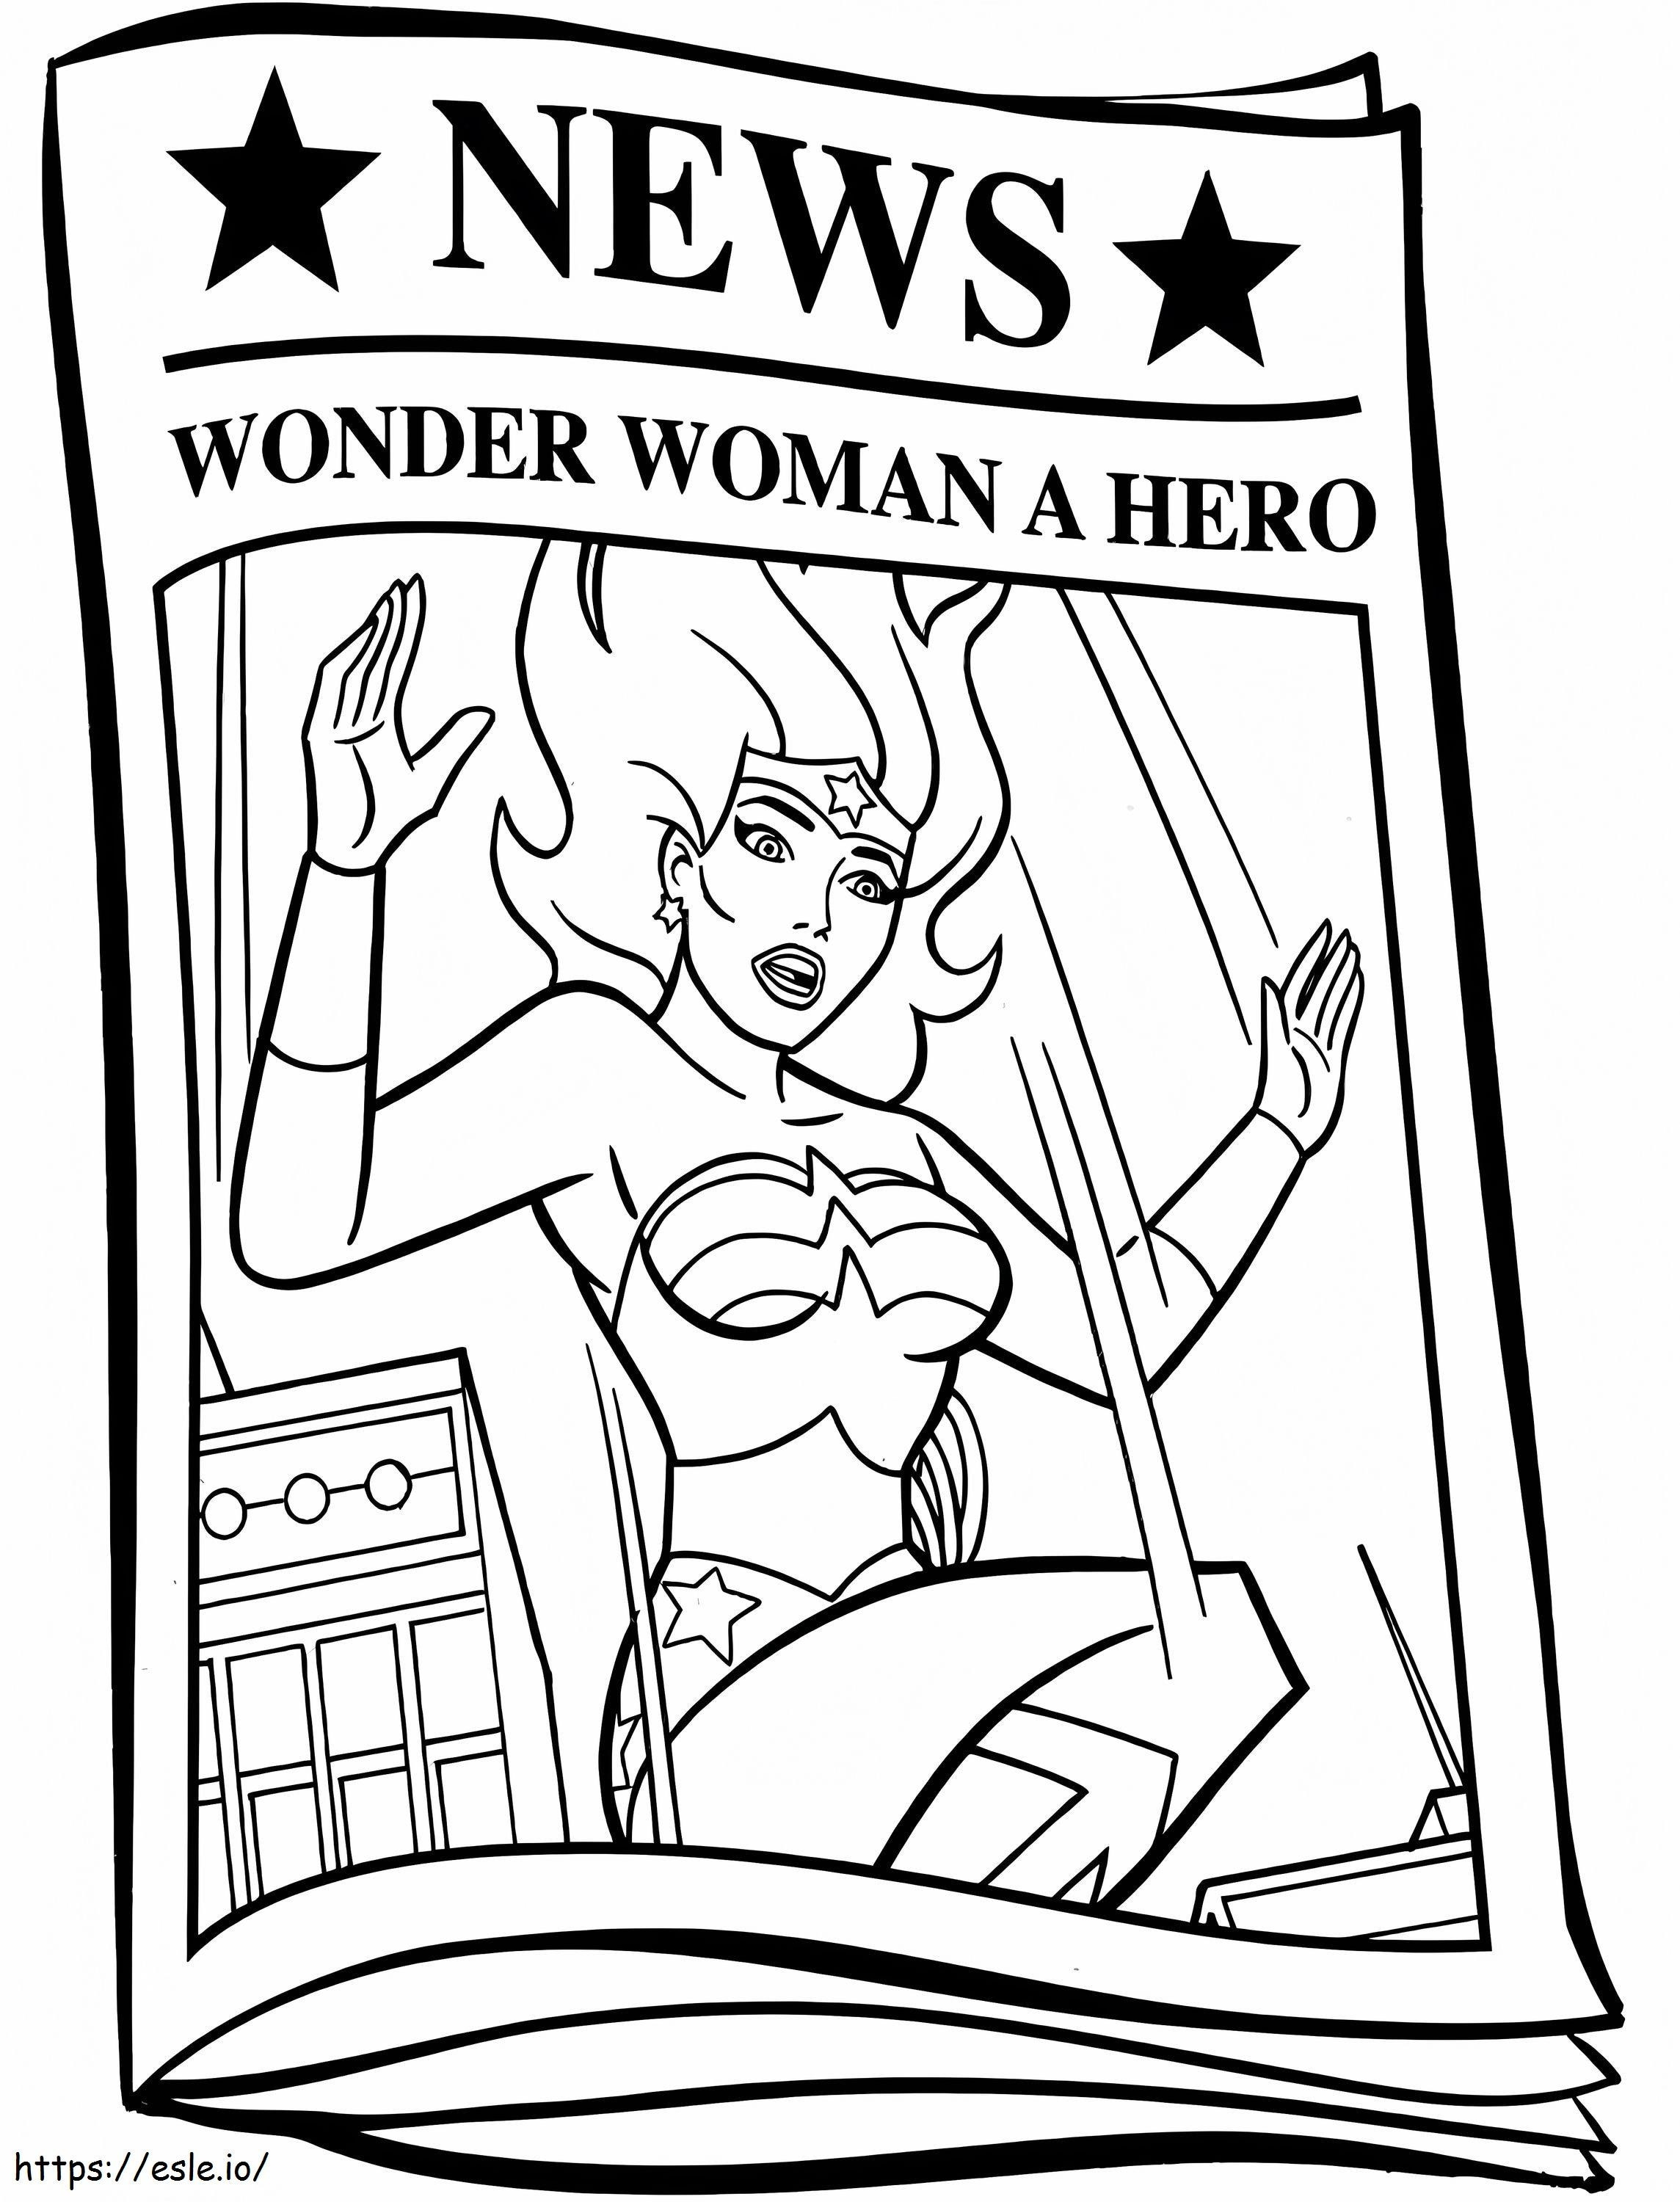  Wiadomości o Wonder Woman A4 kolorowanka